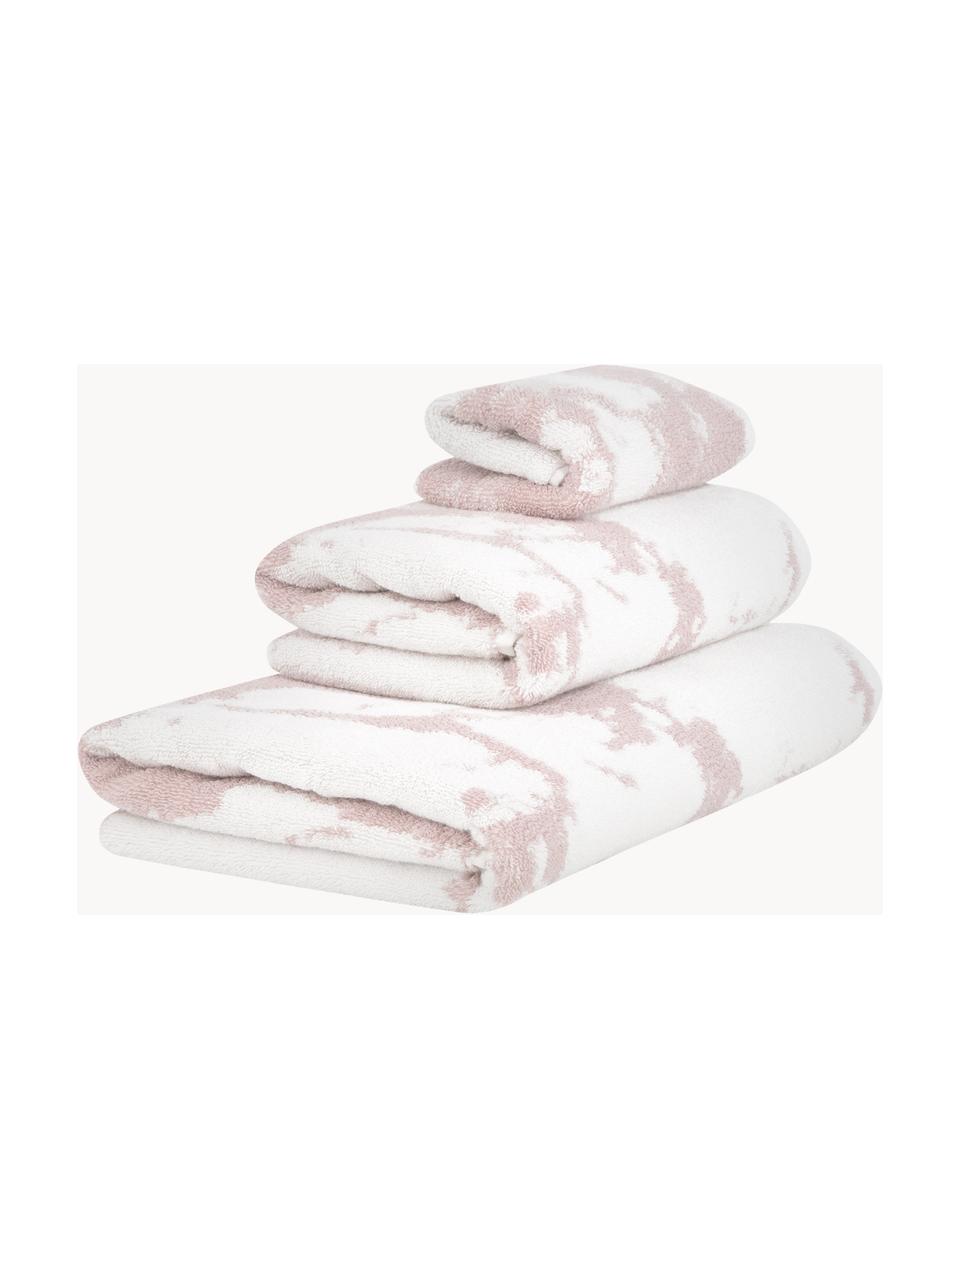 Sada ručníků s mramorovým potiskem Malin, 3 díly, Světle růžová, bílá, 3dílná sada (ručník pro hosty, ručník a osuška)